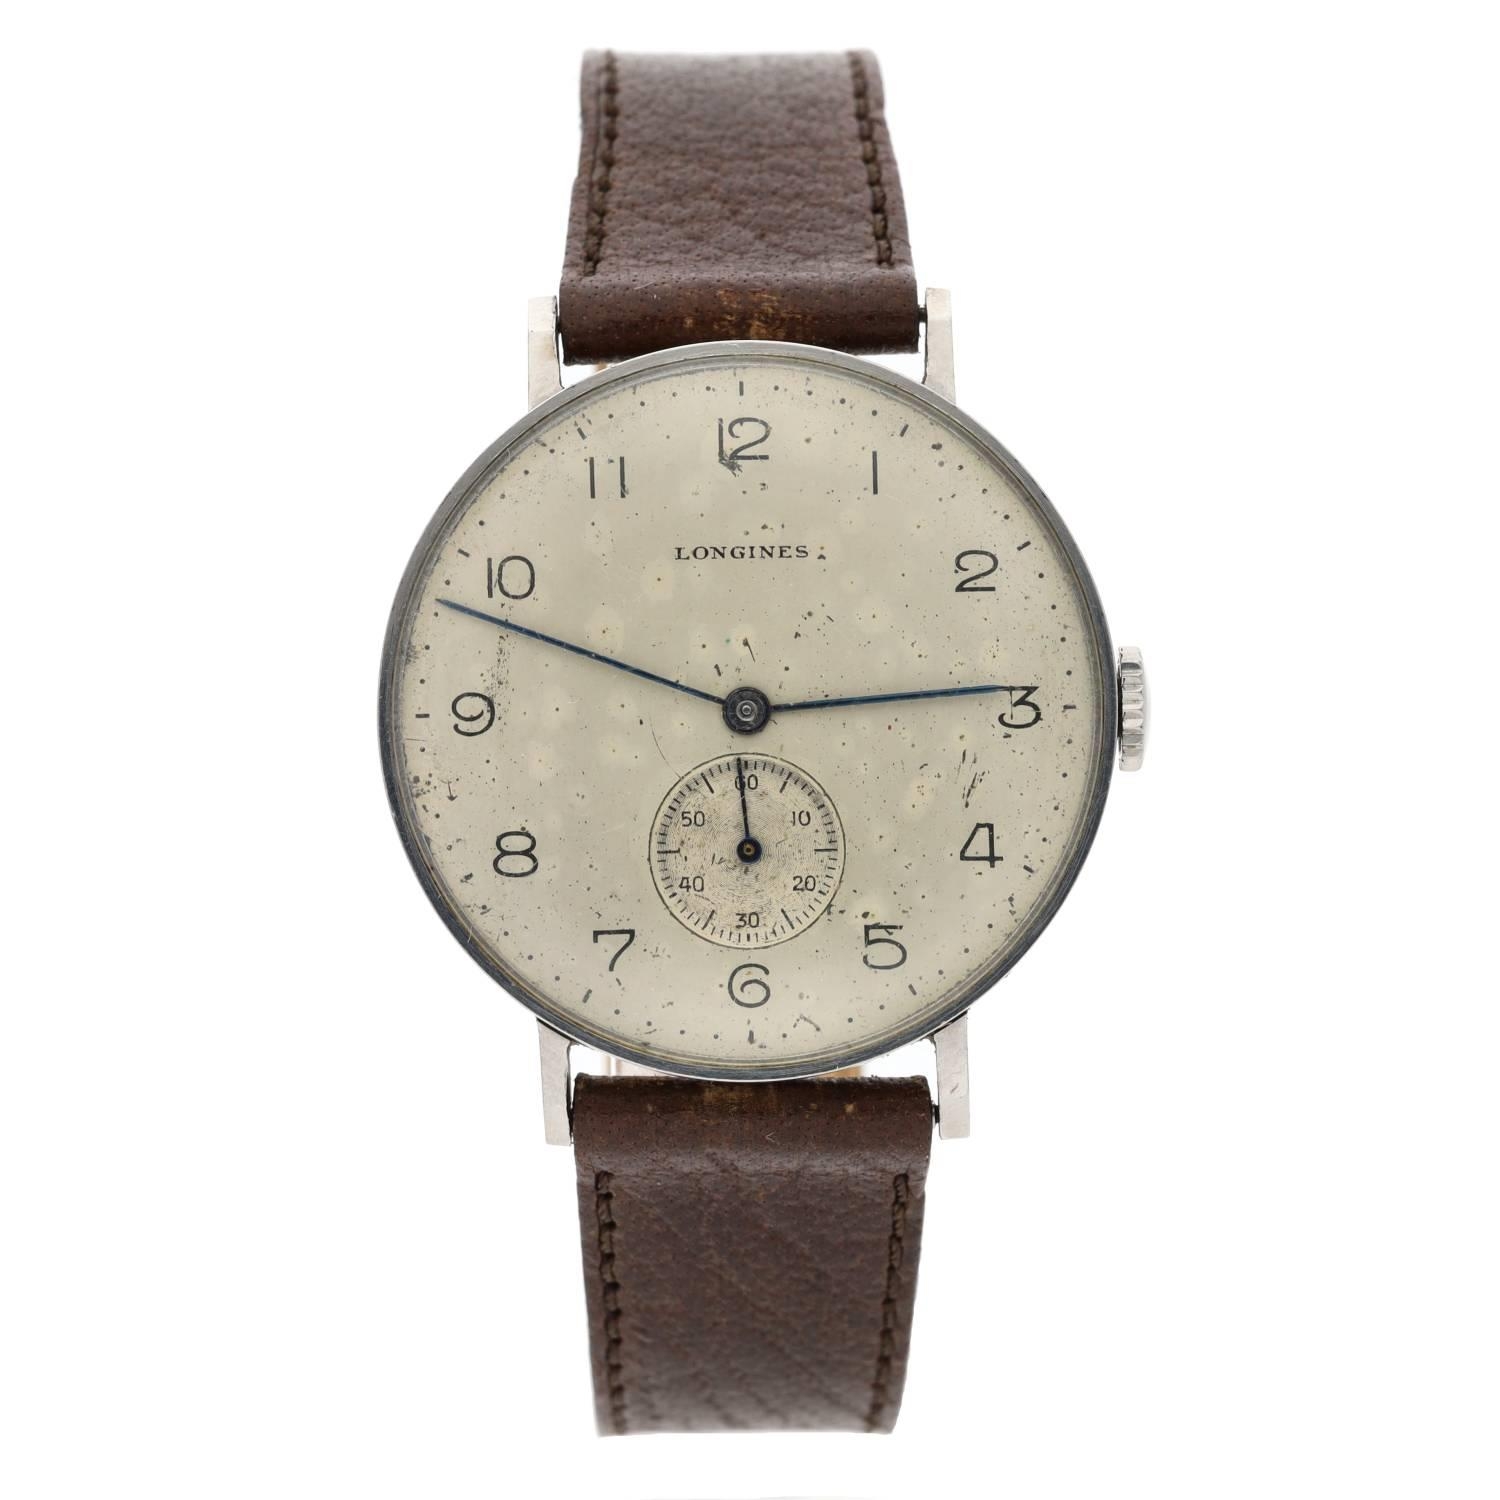 Longines stainless steel gentleman's wristwatch, case no. 21819 19, serial no. 6326xxx, circa